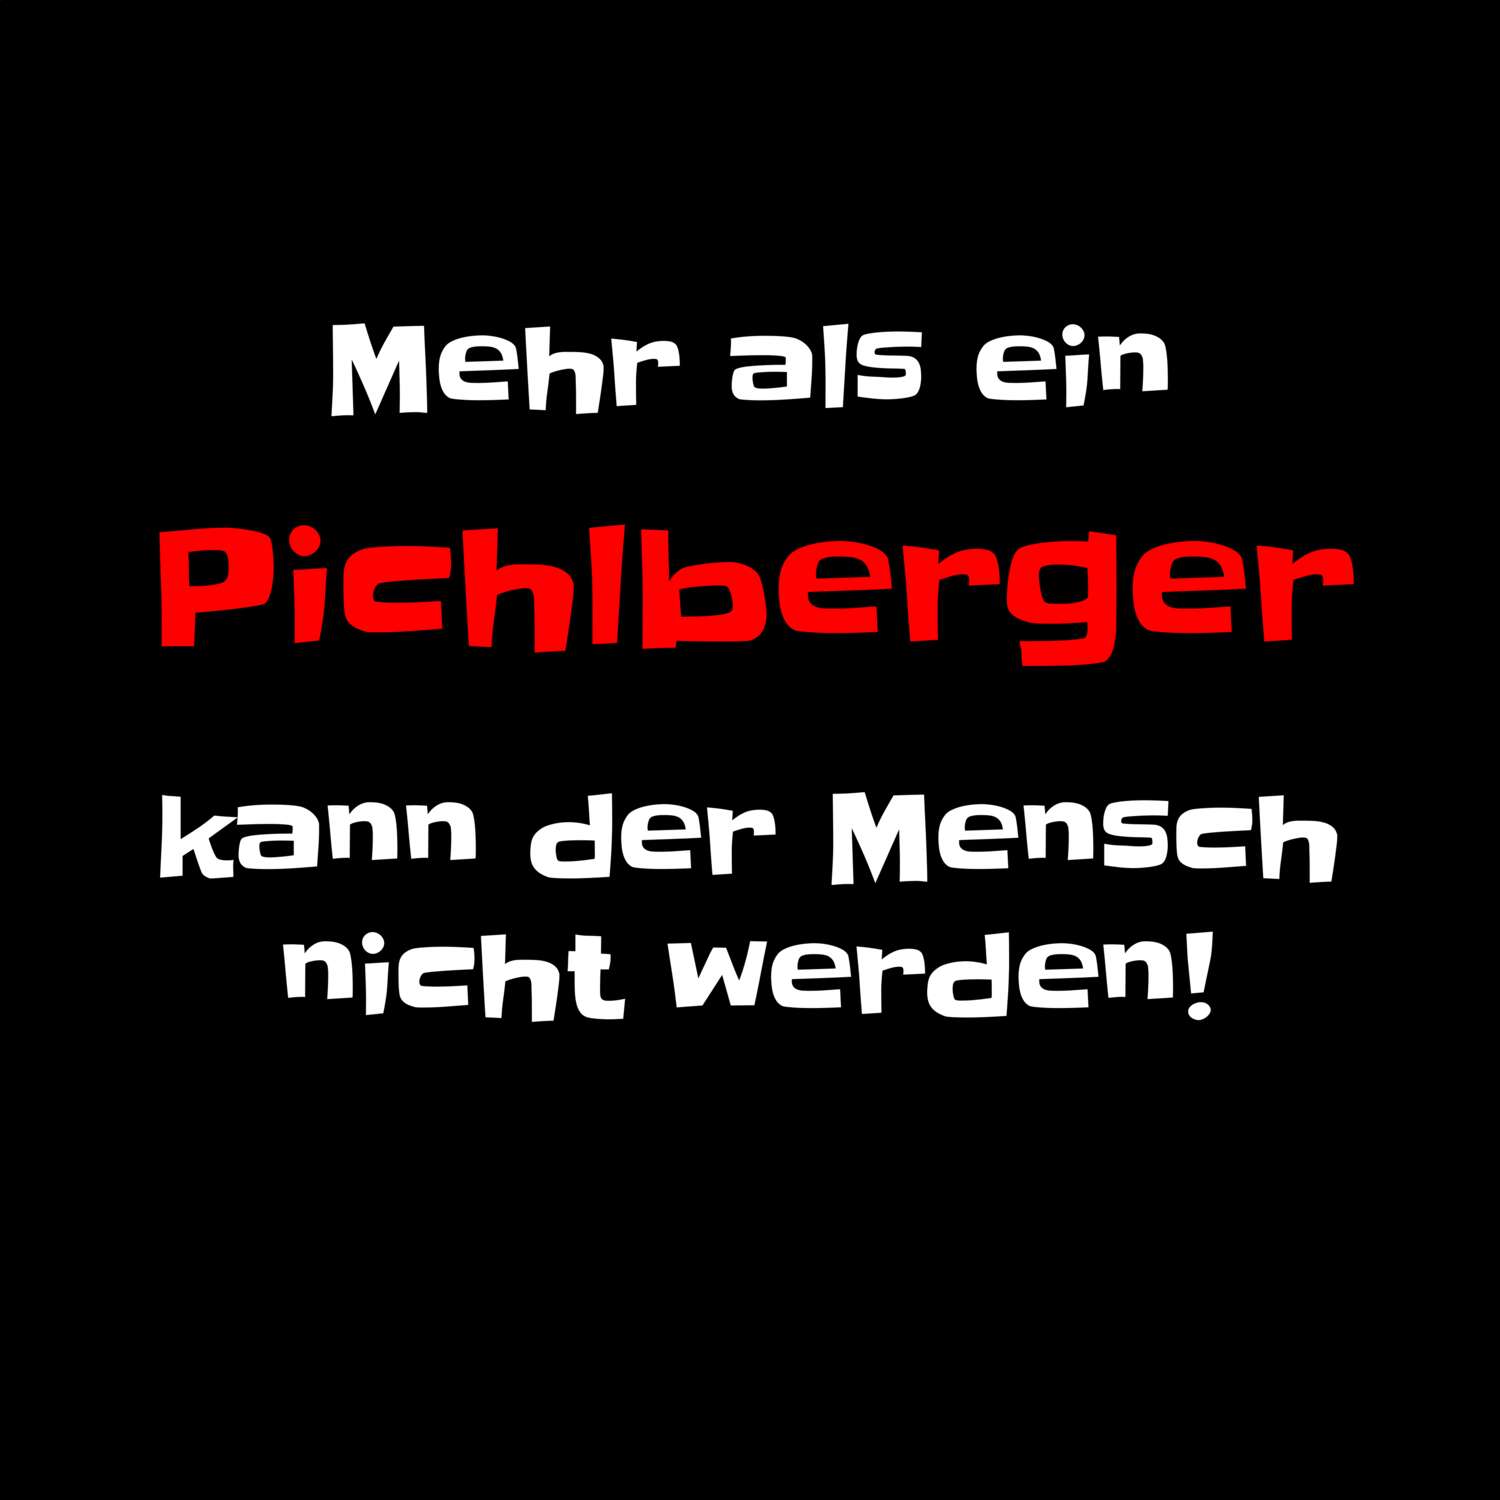 Pichlberg T-Shirt »Mehr als ein«